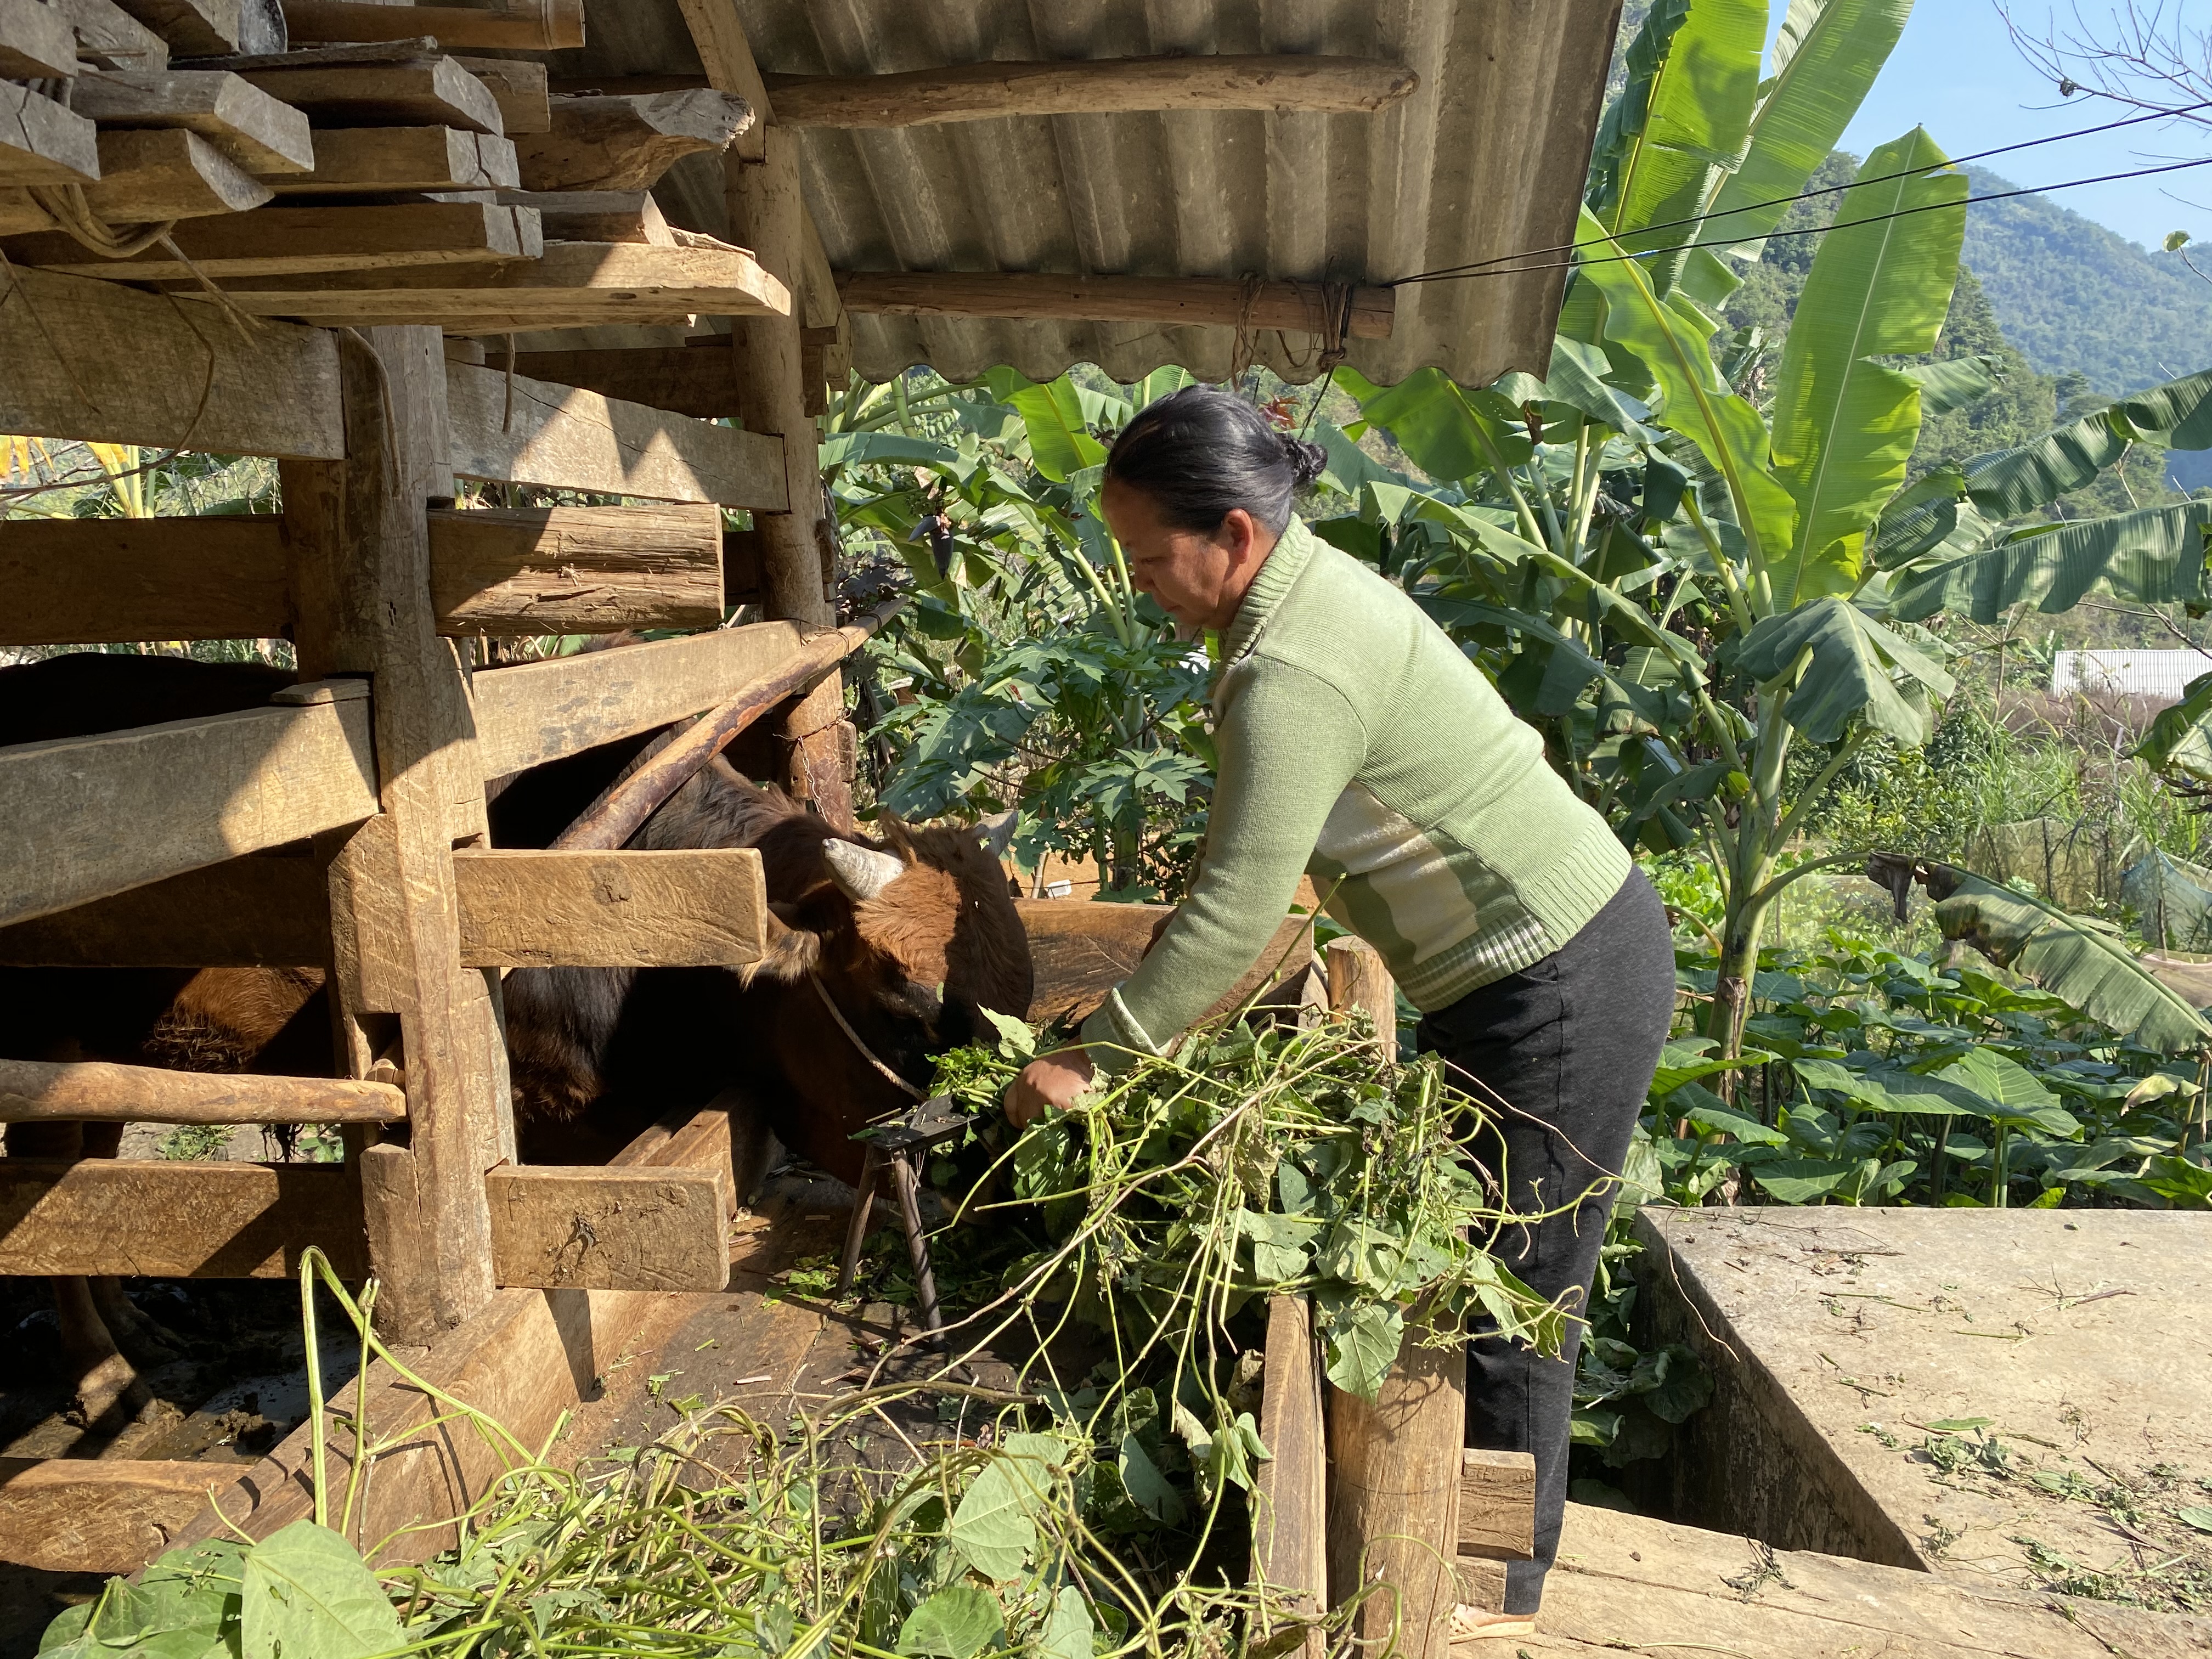 Hỗ trợ sản xuất với các loại giống cây trồng, vật nuôi phù hợp đã tạo điều kiện giúp đồng bào DTTS ở Hà Quảng có cơ hội vươn lên thoát nghèo.